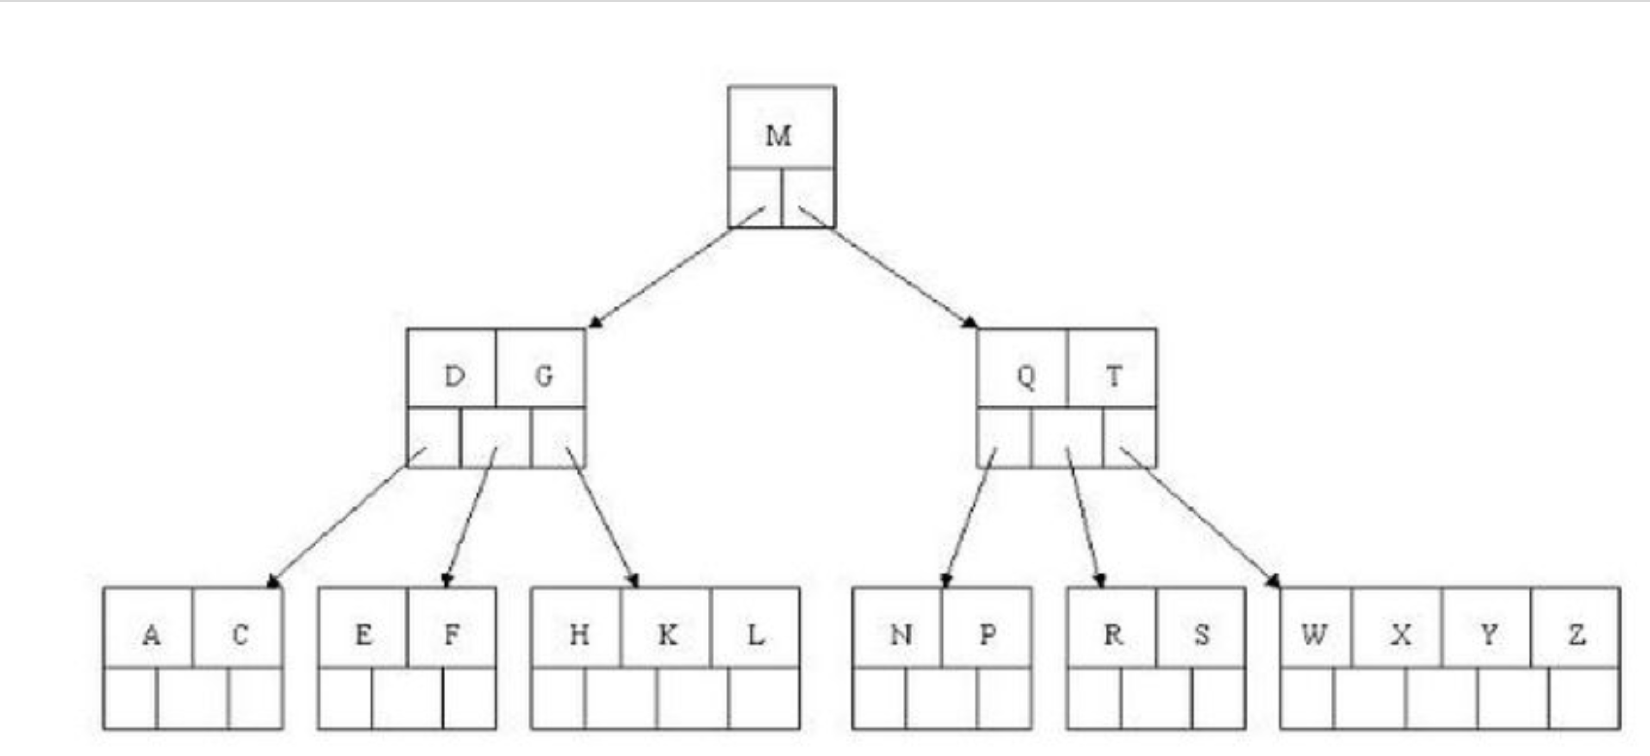 B дерево структура. B дерево c++. Сбалансированное дерево b+. B-дерево (b-Tree).